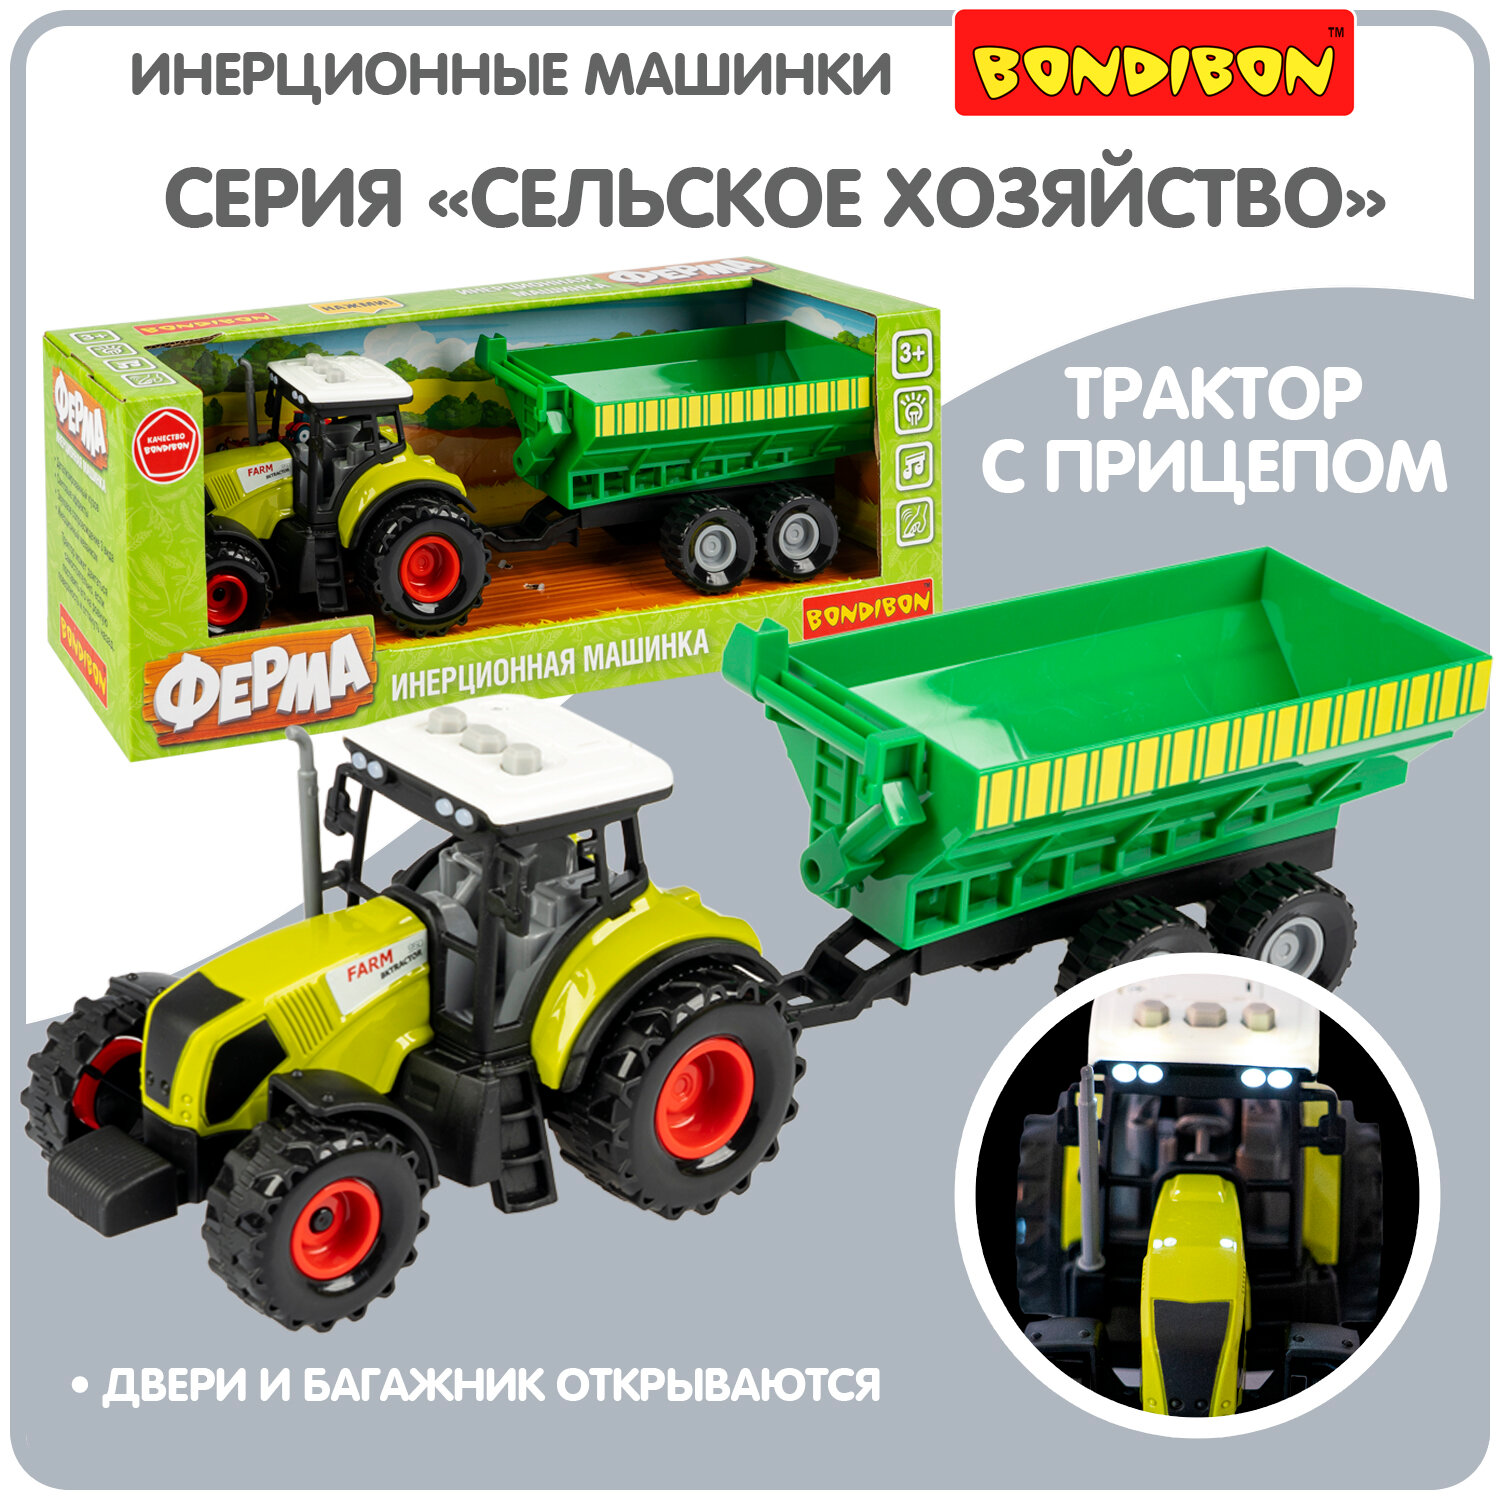 Инерционная машинка Bondibon «сельское хозяйство», свет и звук, трактор зел. прицеп, BOX